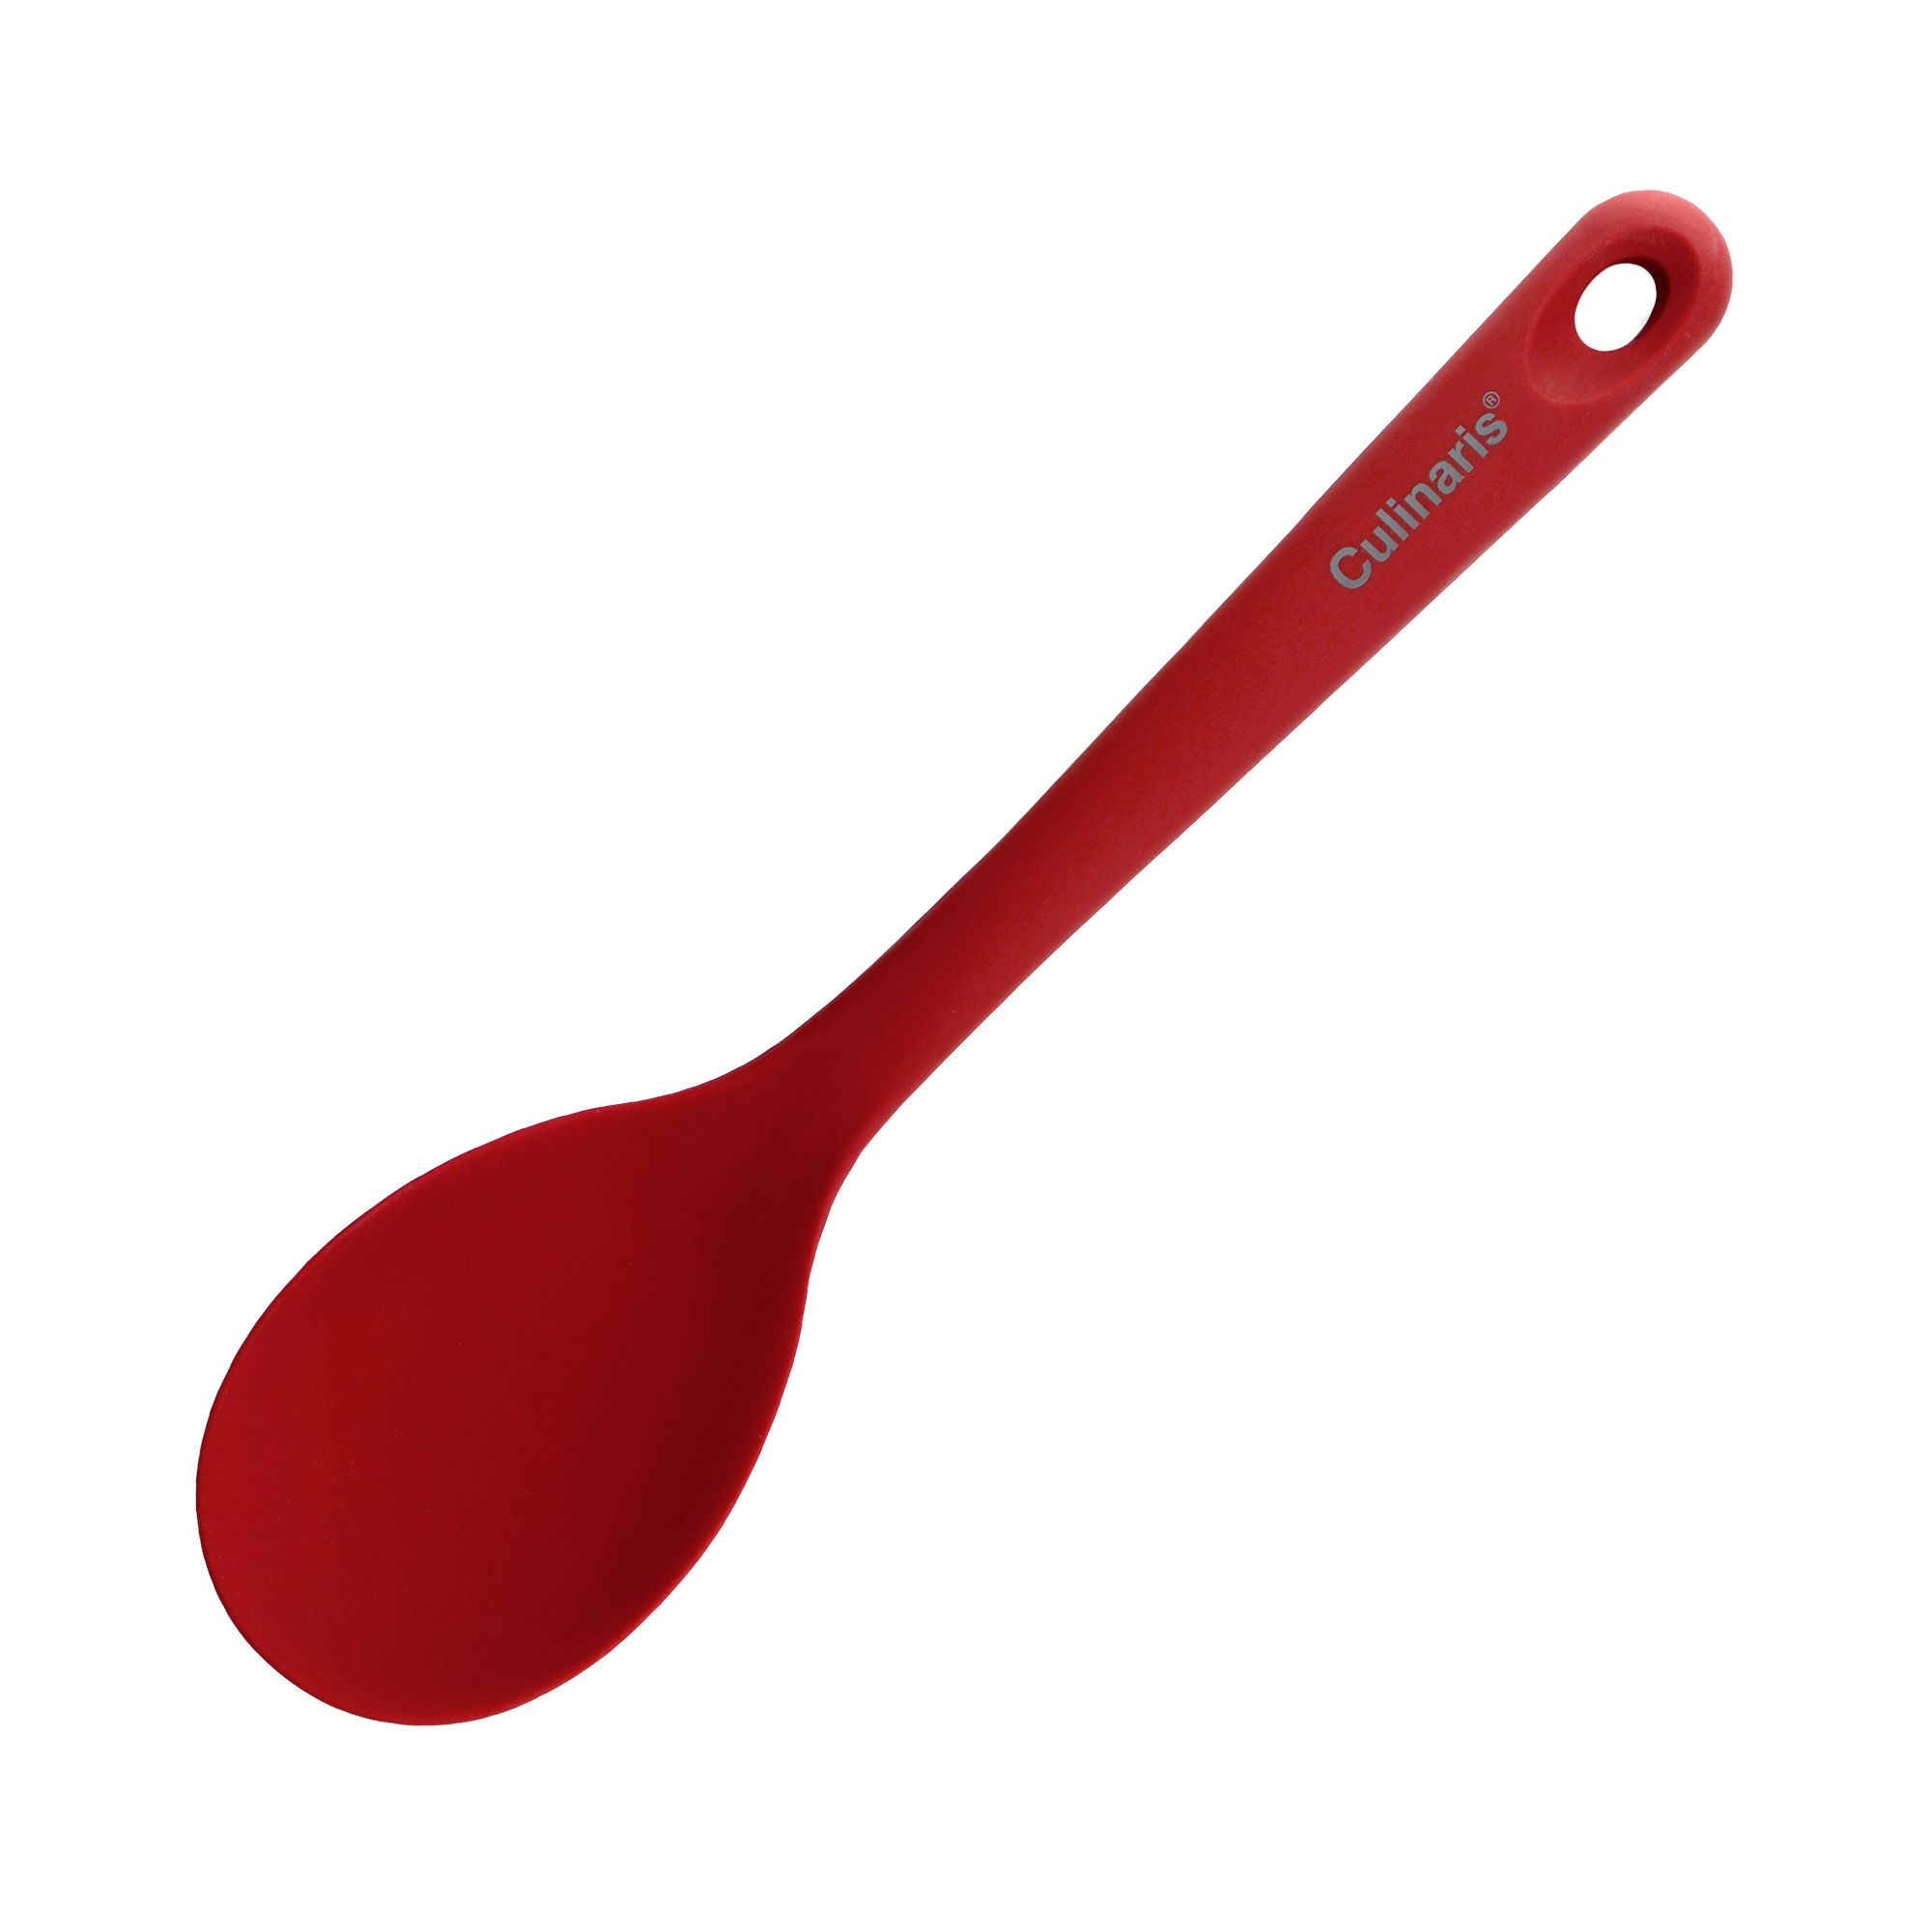 Culinaris Silicone tools - Rice spoon / salad spoon